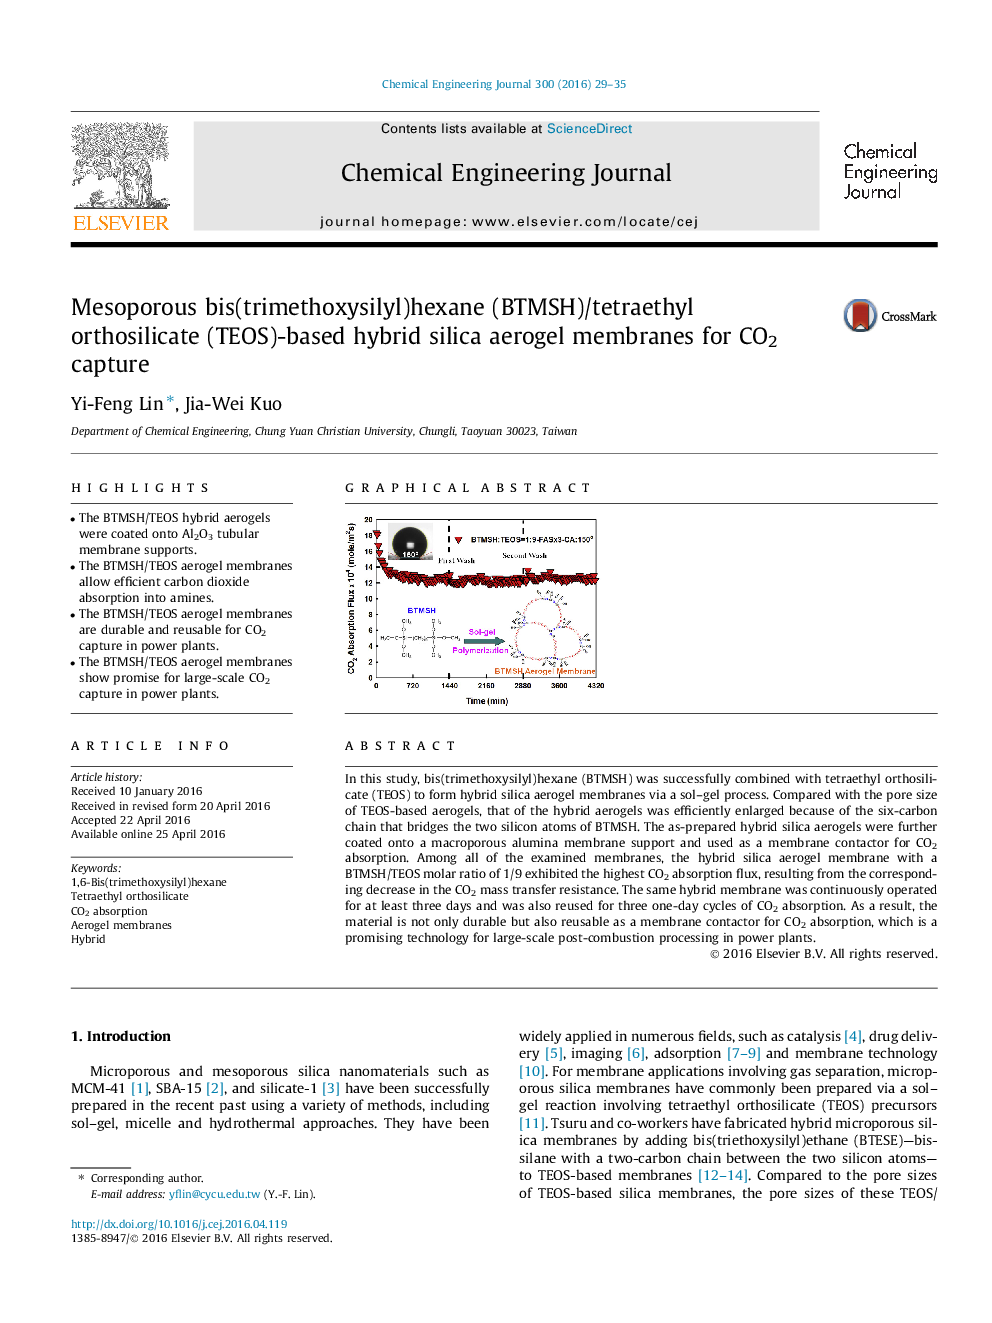  غشاء آئروژل سیلیکا ترکیبی مبتنی بر (TEOS)اورتوسیلیکات تترا اتیل/(BTMSH) هگزان (trimethoxysilyl)BIS متخلخل برای جذب CO2